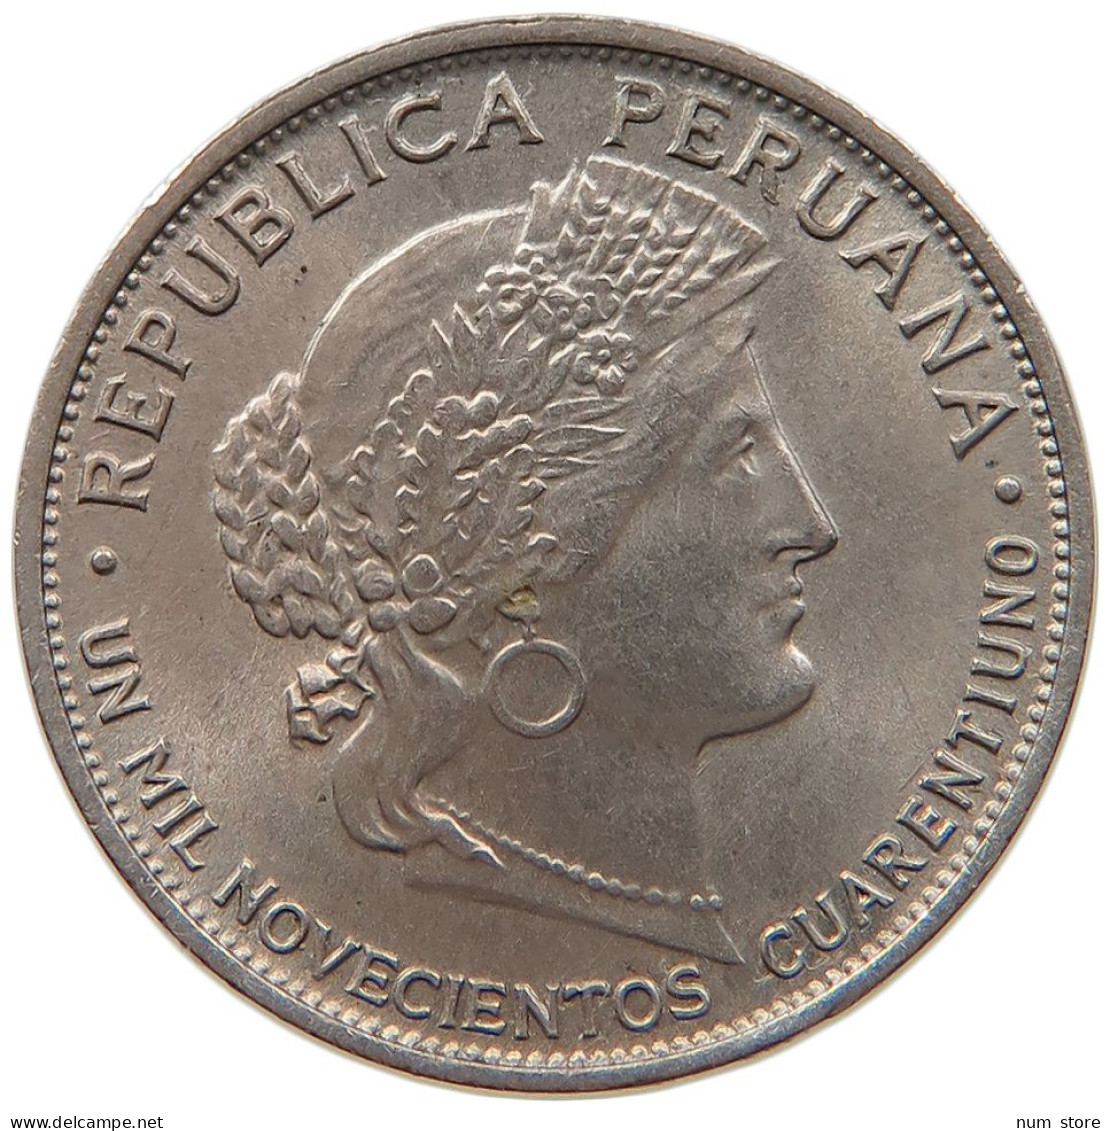 PERU 5 CENTAVOS 1941 UNC #t030 0019 - Peru